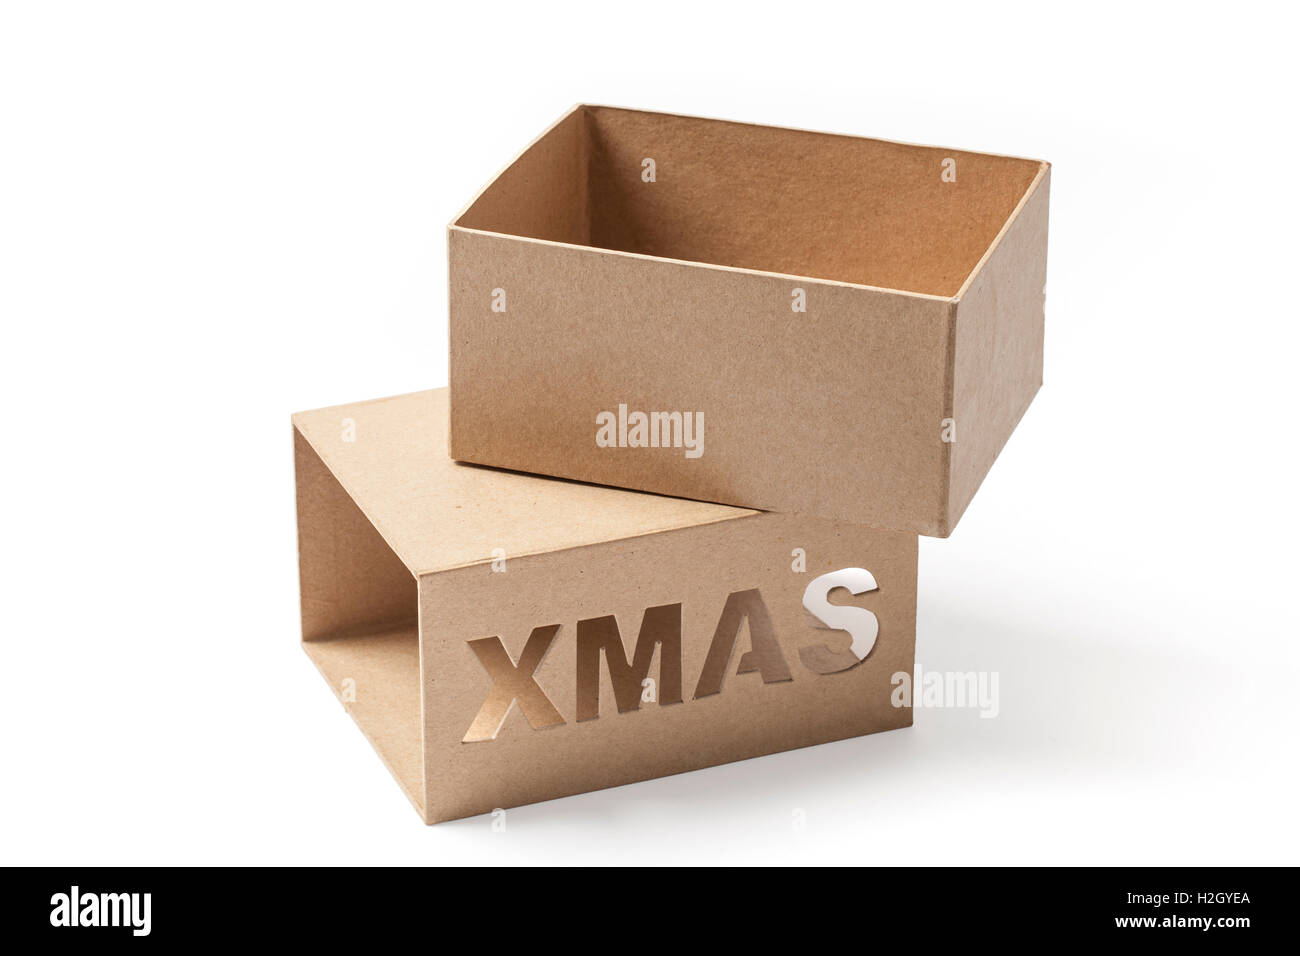 Scatole Per Regali Di Natale.Aprire La Scatola Di Cartone Per I Regali Di Natale In Due Parti Isolate Su Sfondo Bianco Foto Stock Alamy